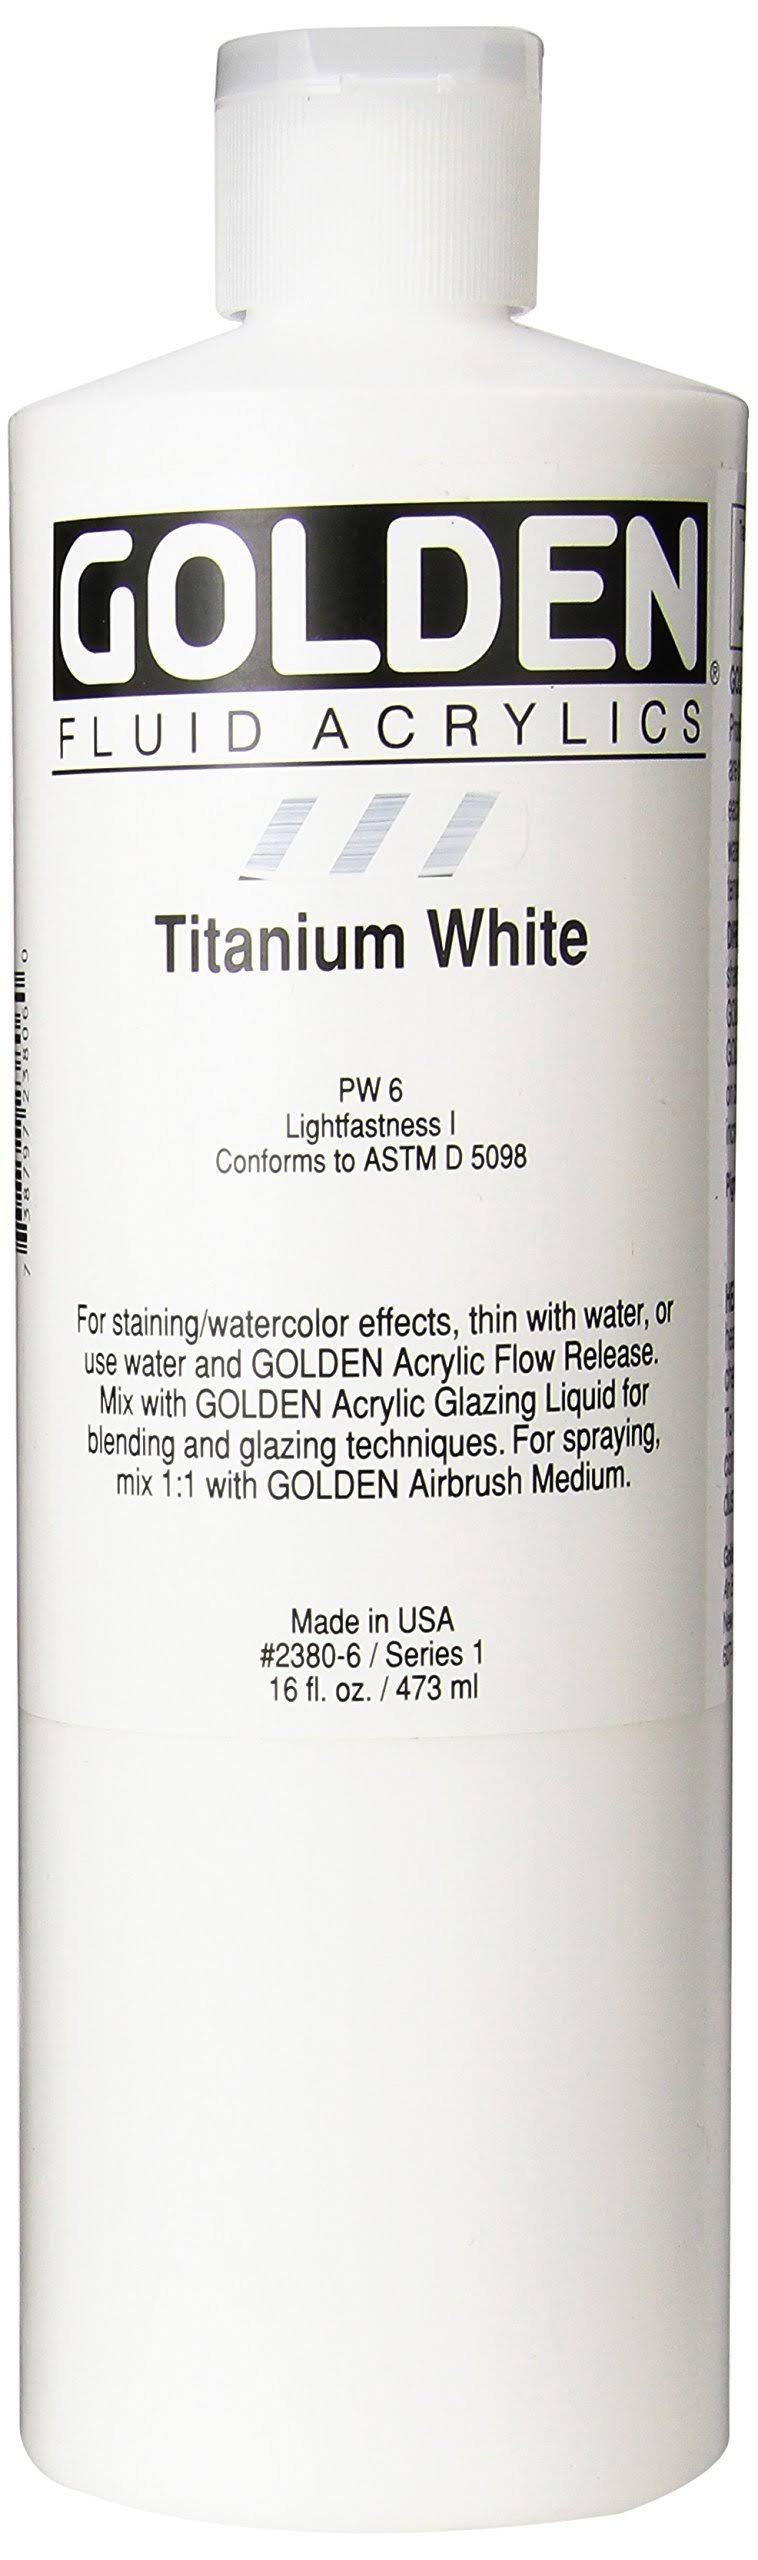 Golden Fluid Acrylic Paint 16 oz - Titanium White